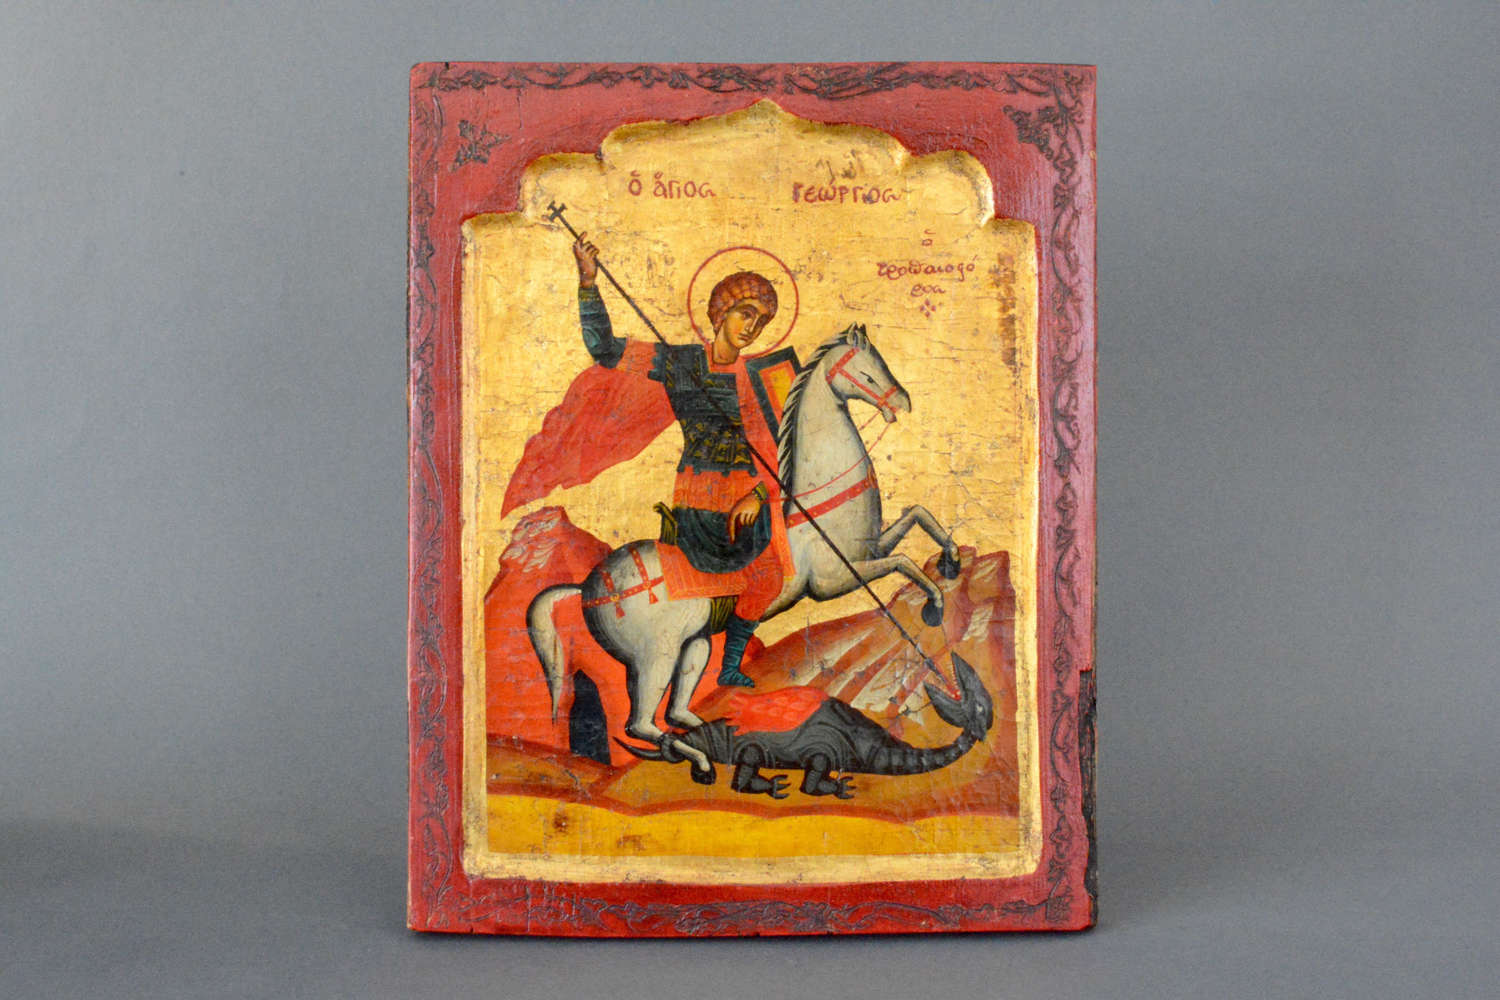 Decorative Holy Icon Saint George on horseback slaying the dragon.